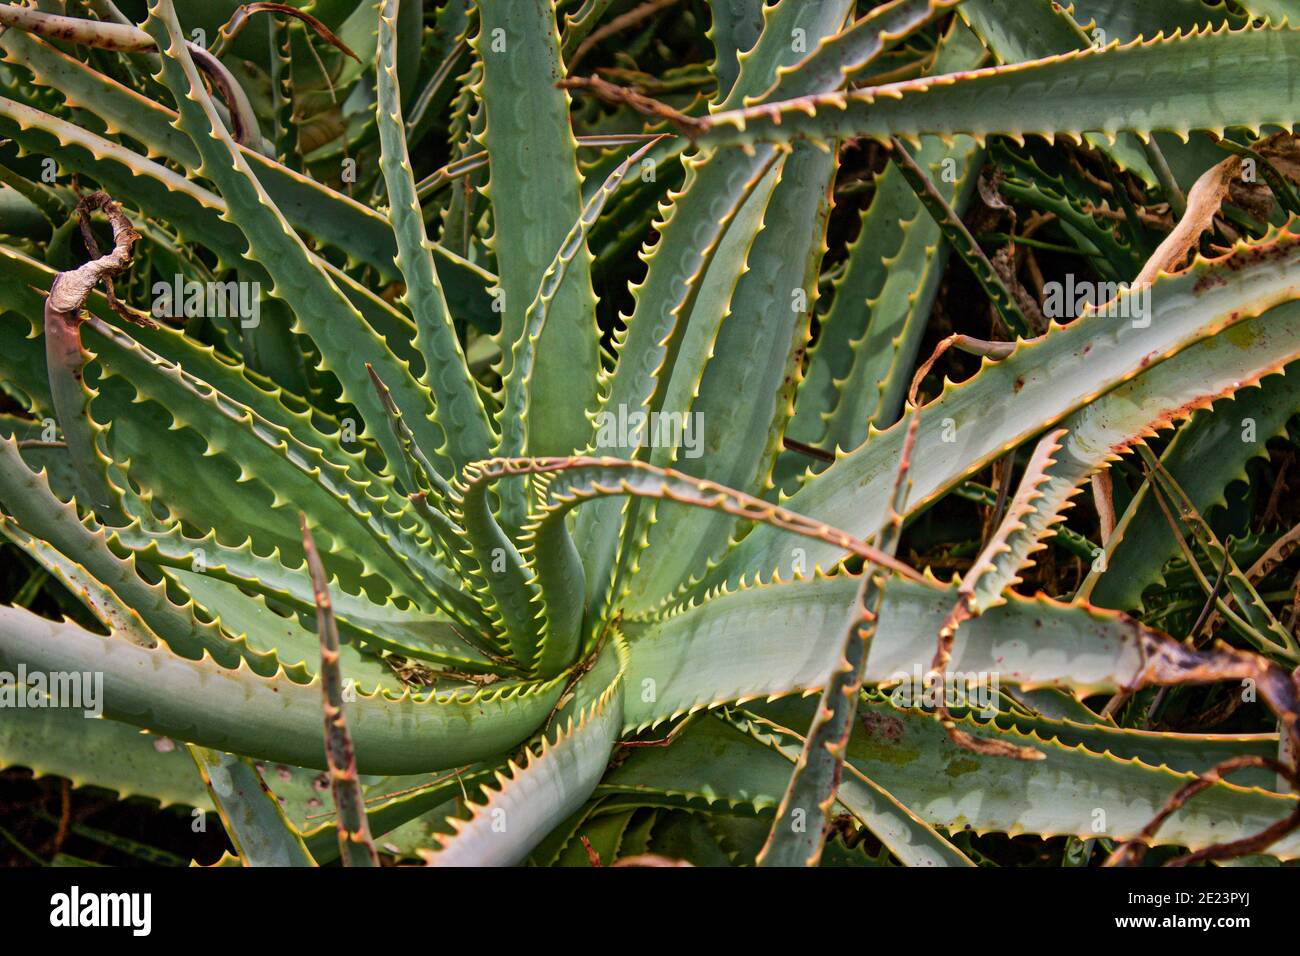 Una pianta enorme, prickly Aloe vera cresce selvaggia, spiralando verso l'alto, sulla Big Island nelle Hawaii. Questa pianta può essere usata per le scottature solari per guarire la vostra pelle Foto Stock